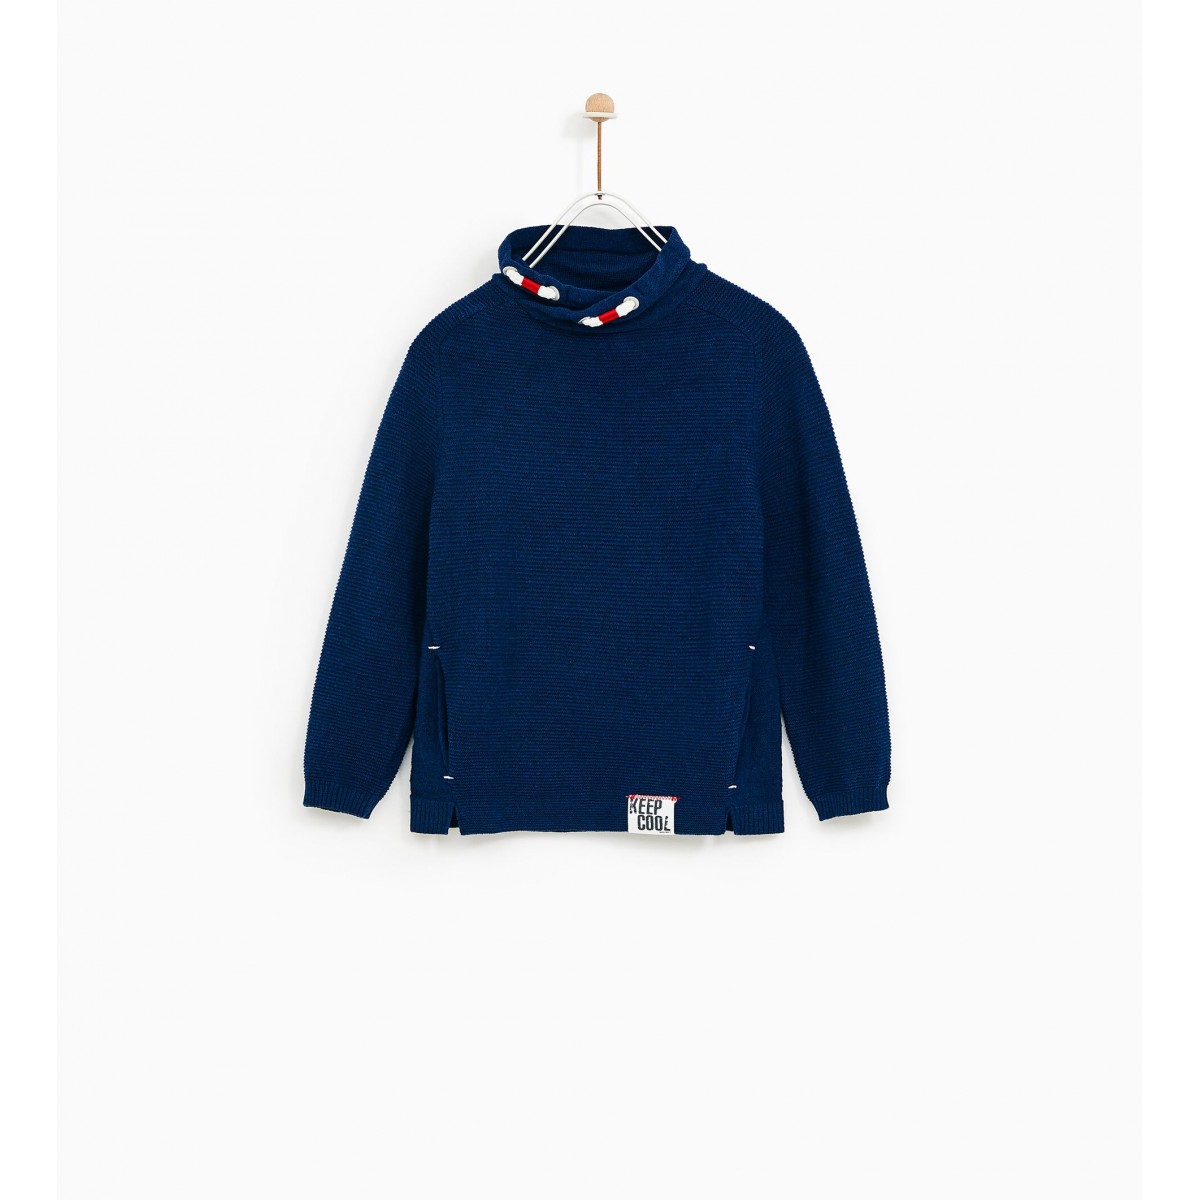 Zara Sweater With Wraparound Turtleneck